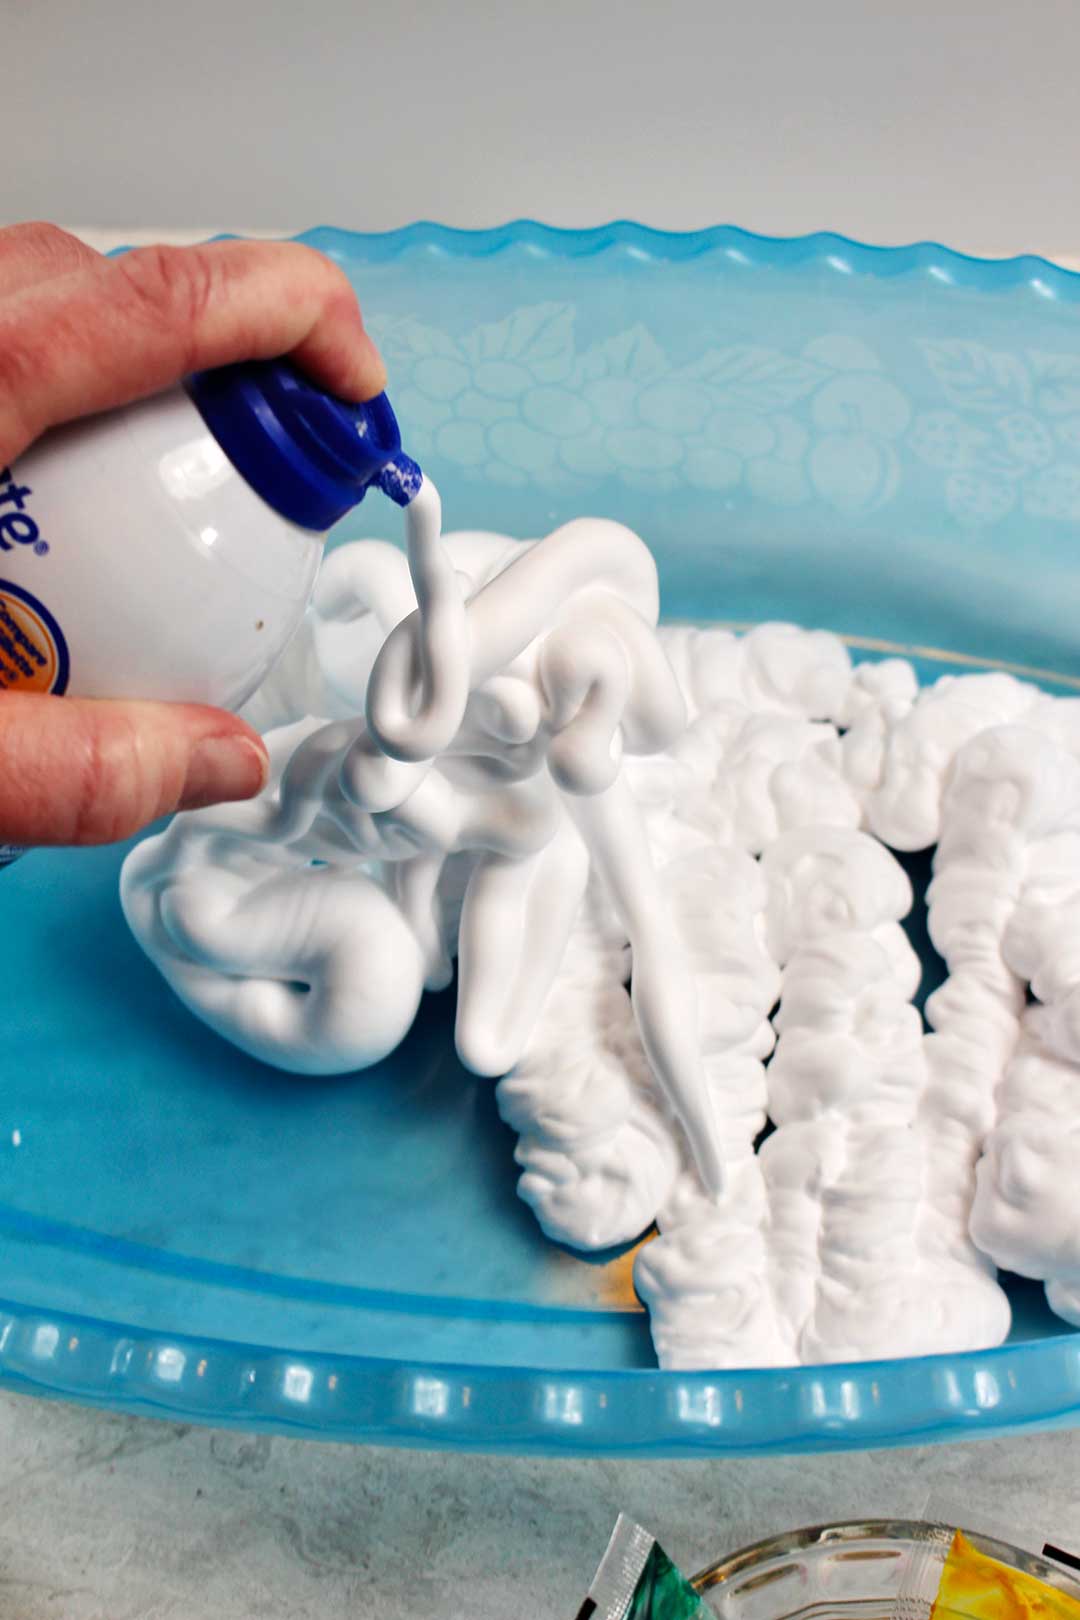 Spraying shaving cream into a plastic tub.